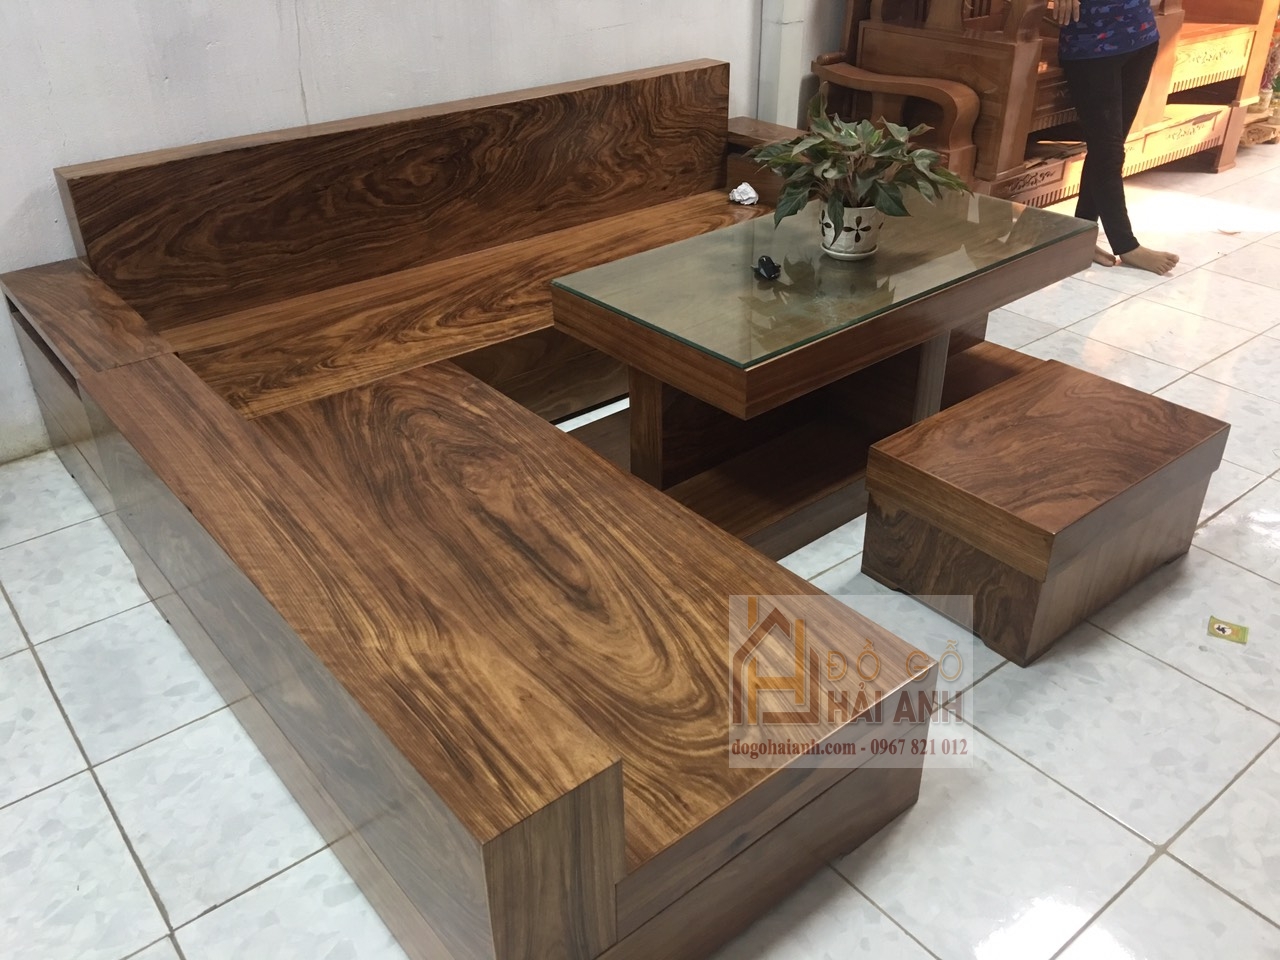 Sofa gỗ góc giá rẻ tại Hà Nội. Hotline: 0967821012